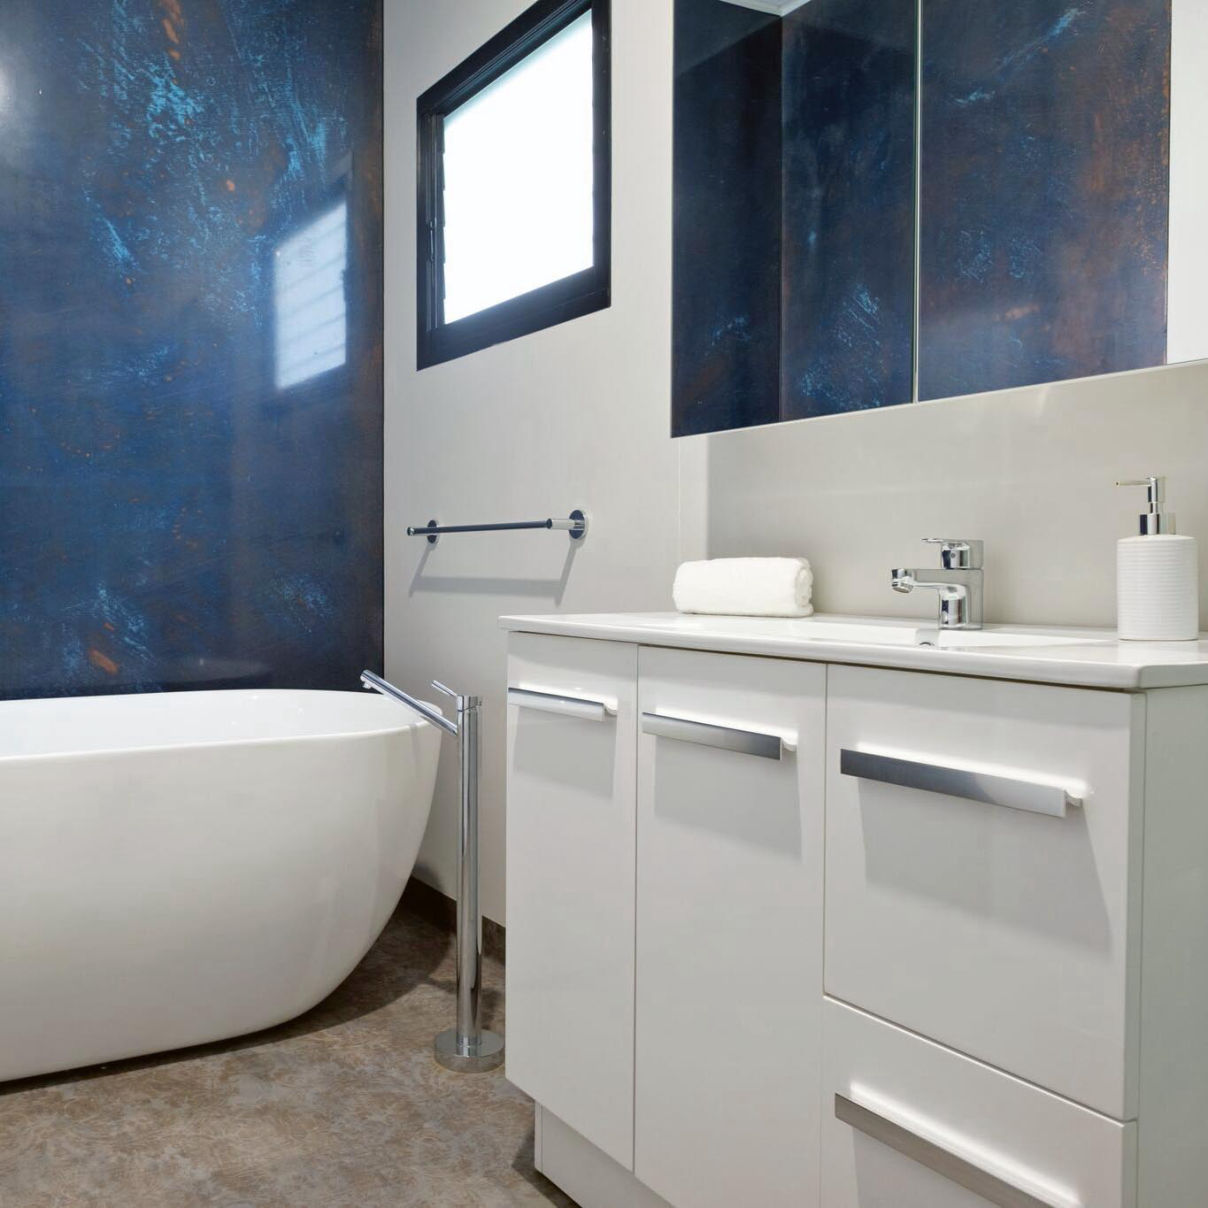 A MAAP House bathroom shows a textured wall behind a freestanding bath